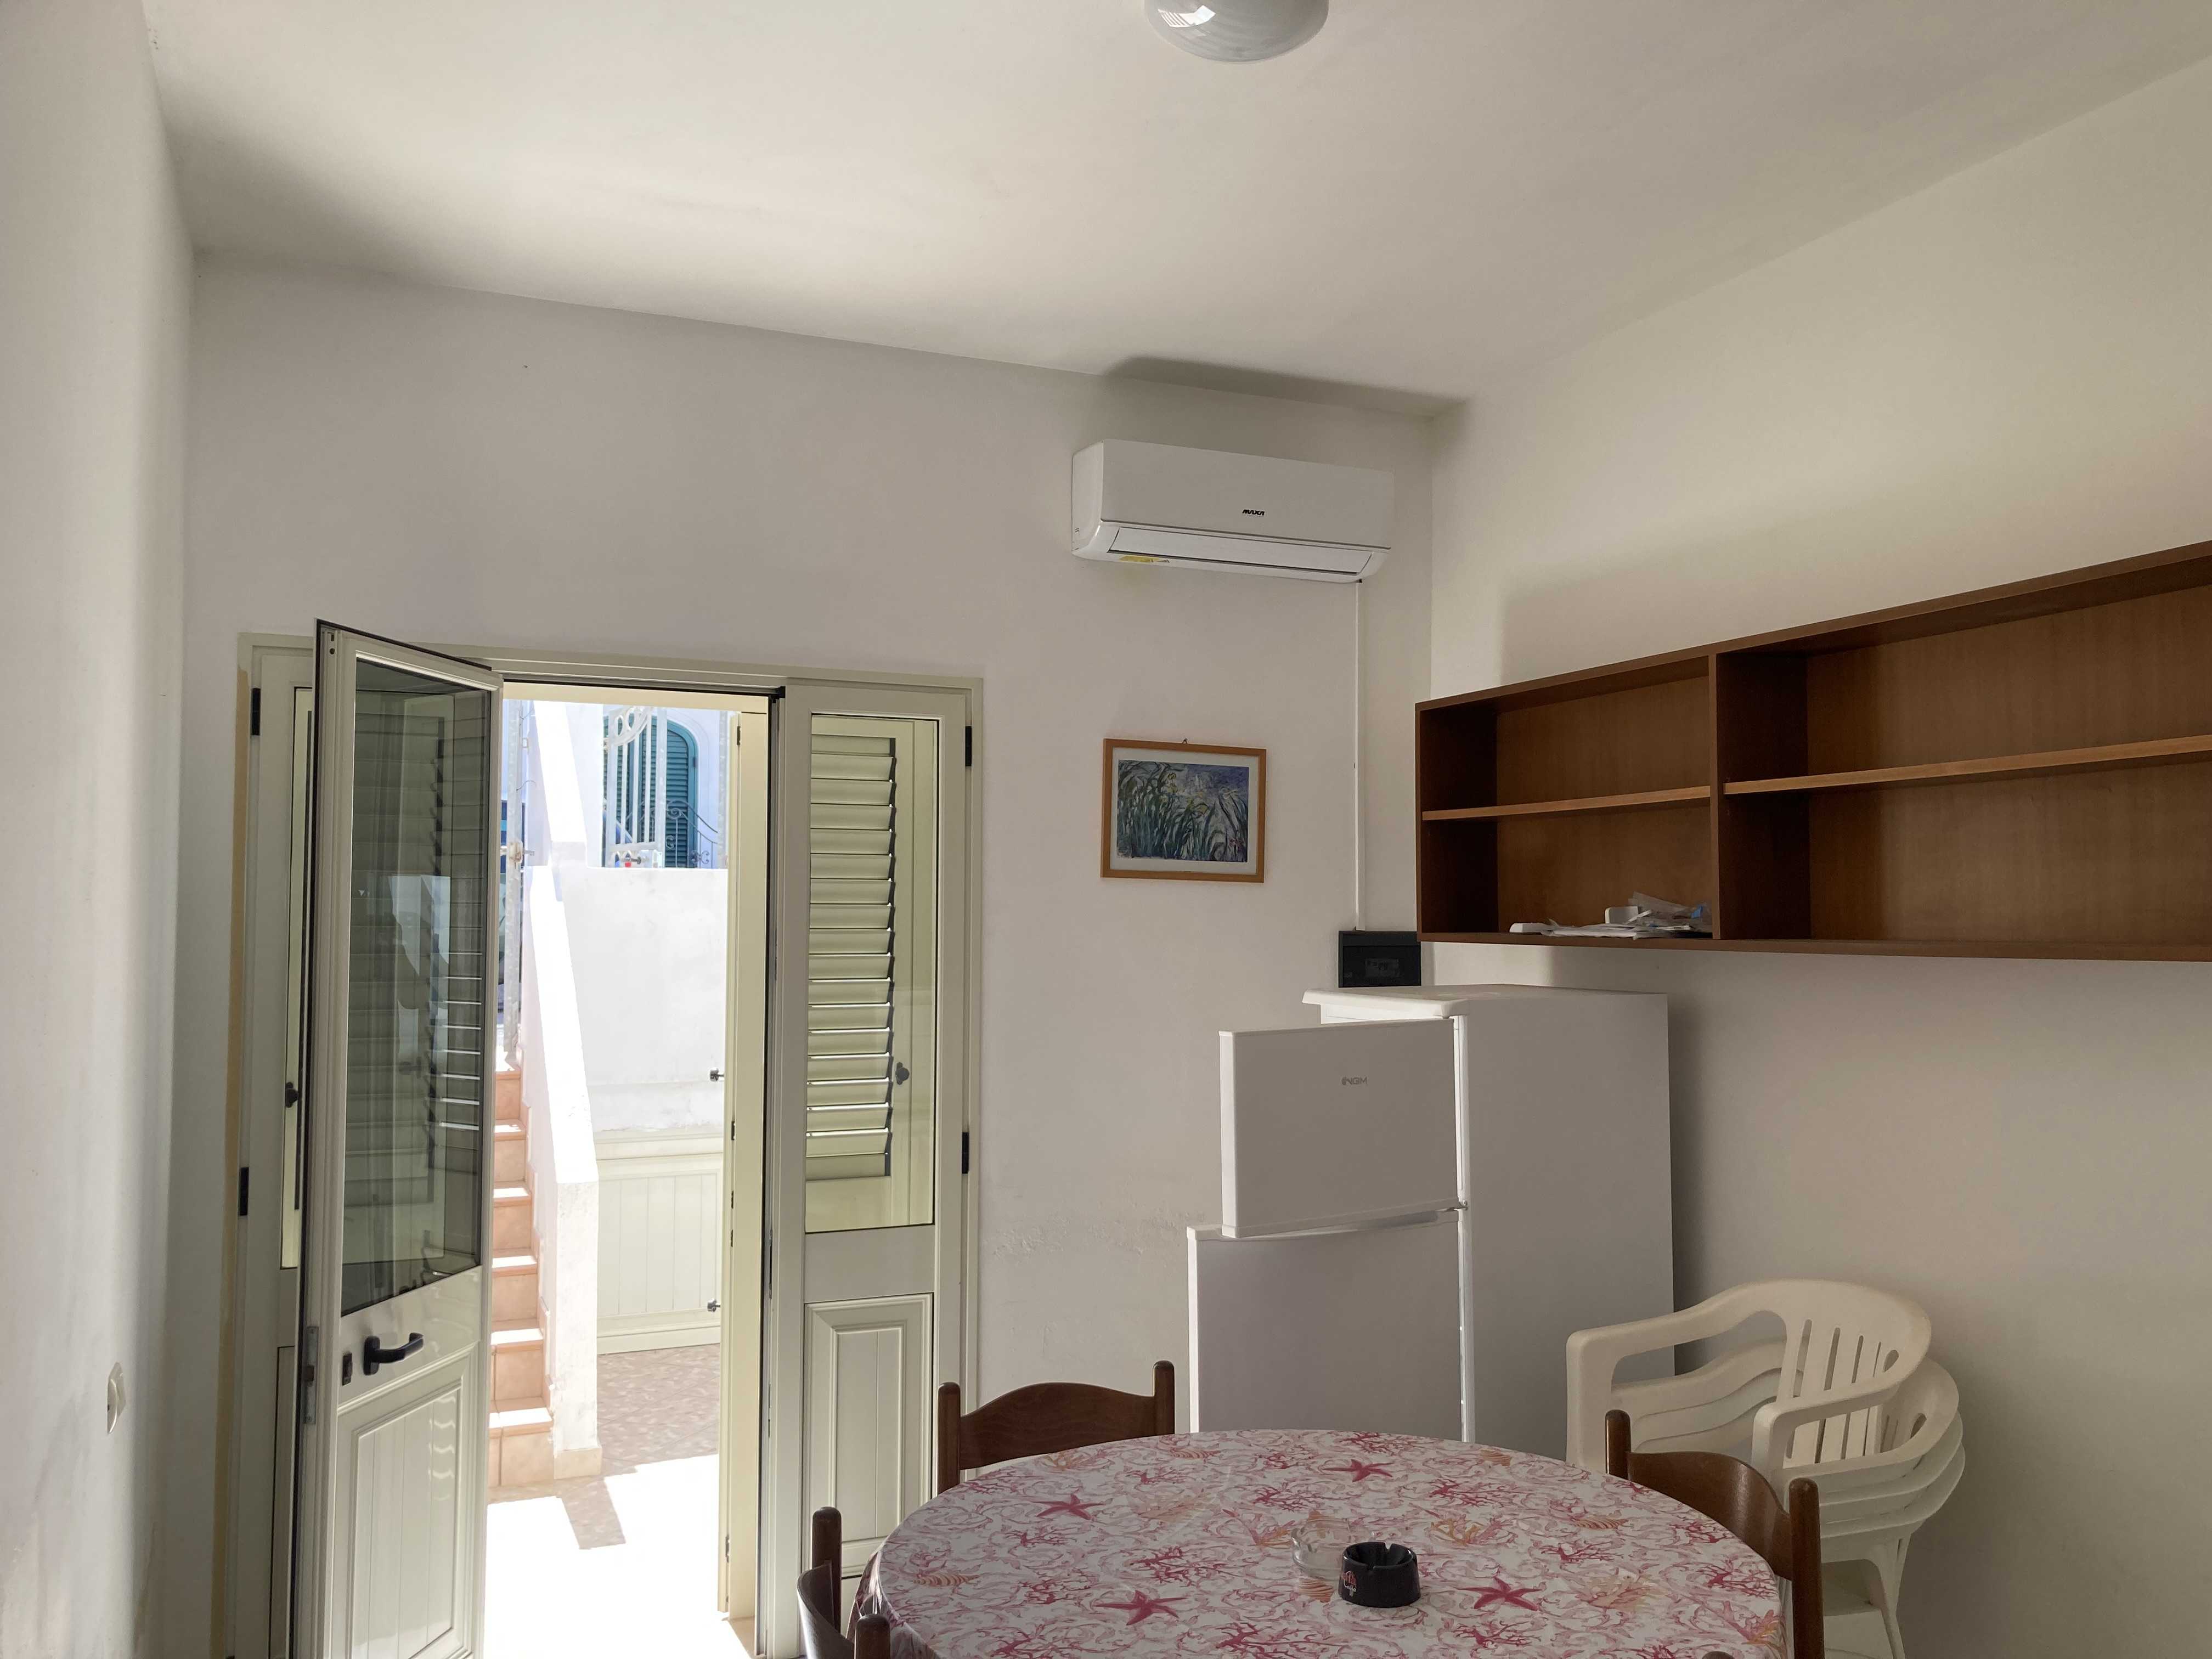 Vendite Salento: Vendita appartamento (Castrignano del Capo) - soggiorno2